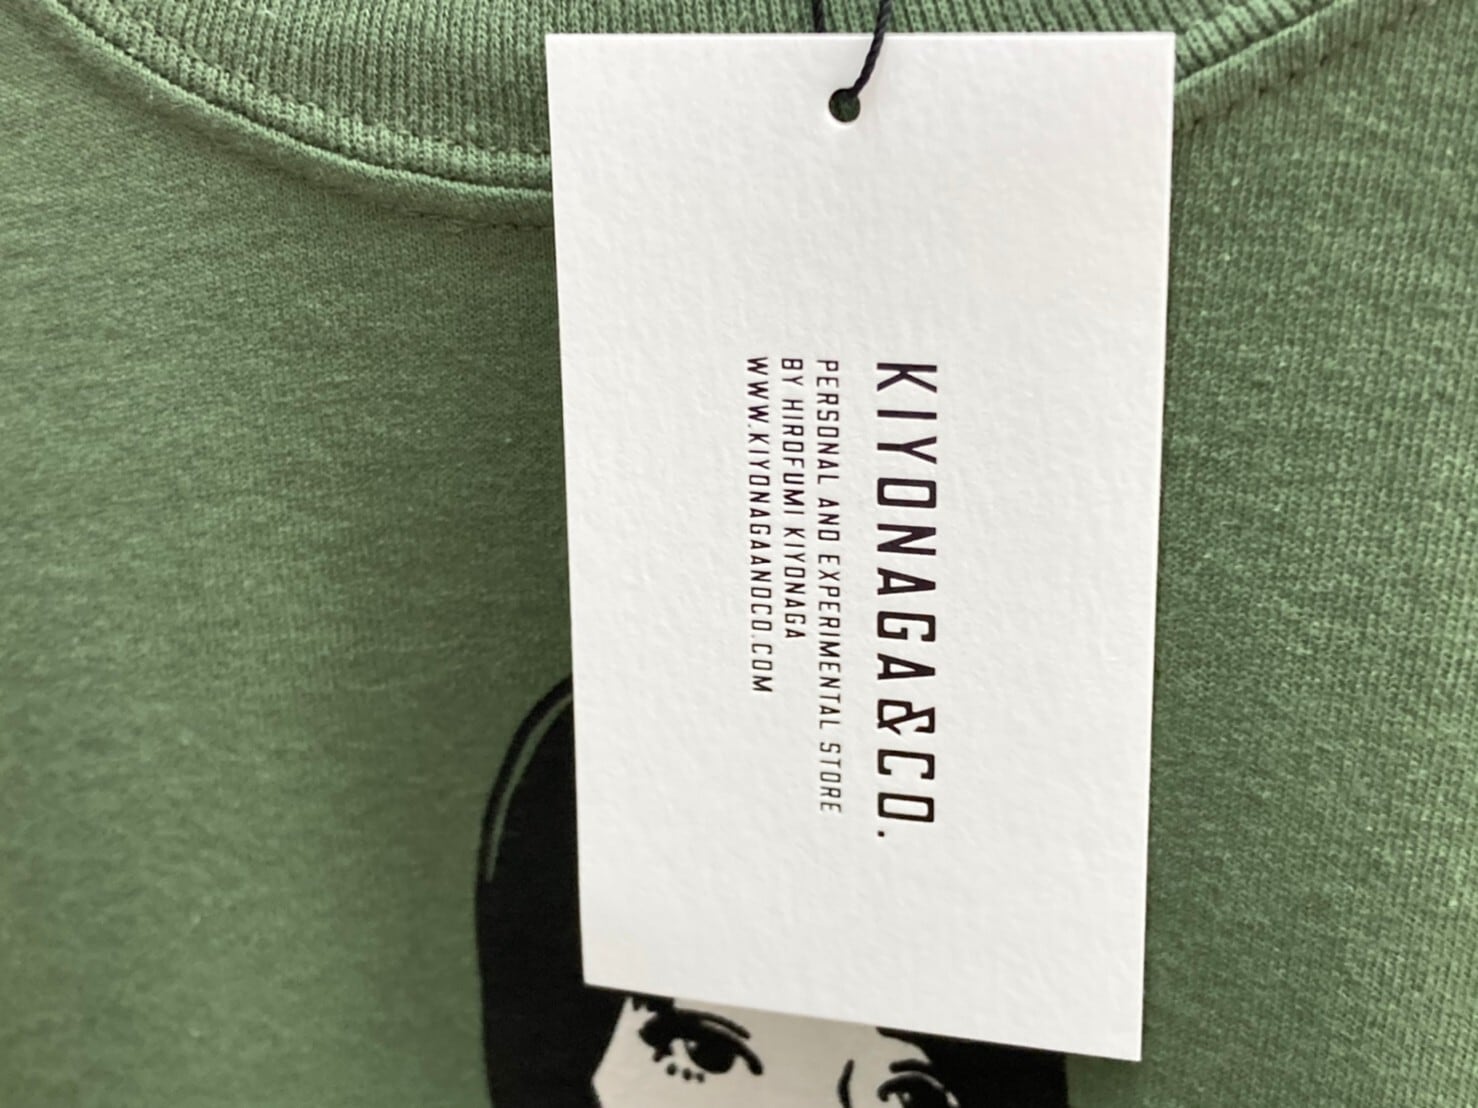 トップスKIYONAGA & CO x KYNE Tシャツ Mサイズ 2色セット